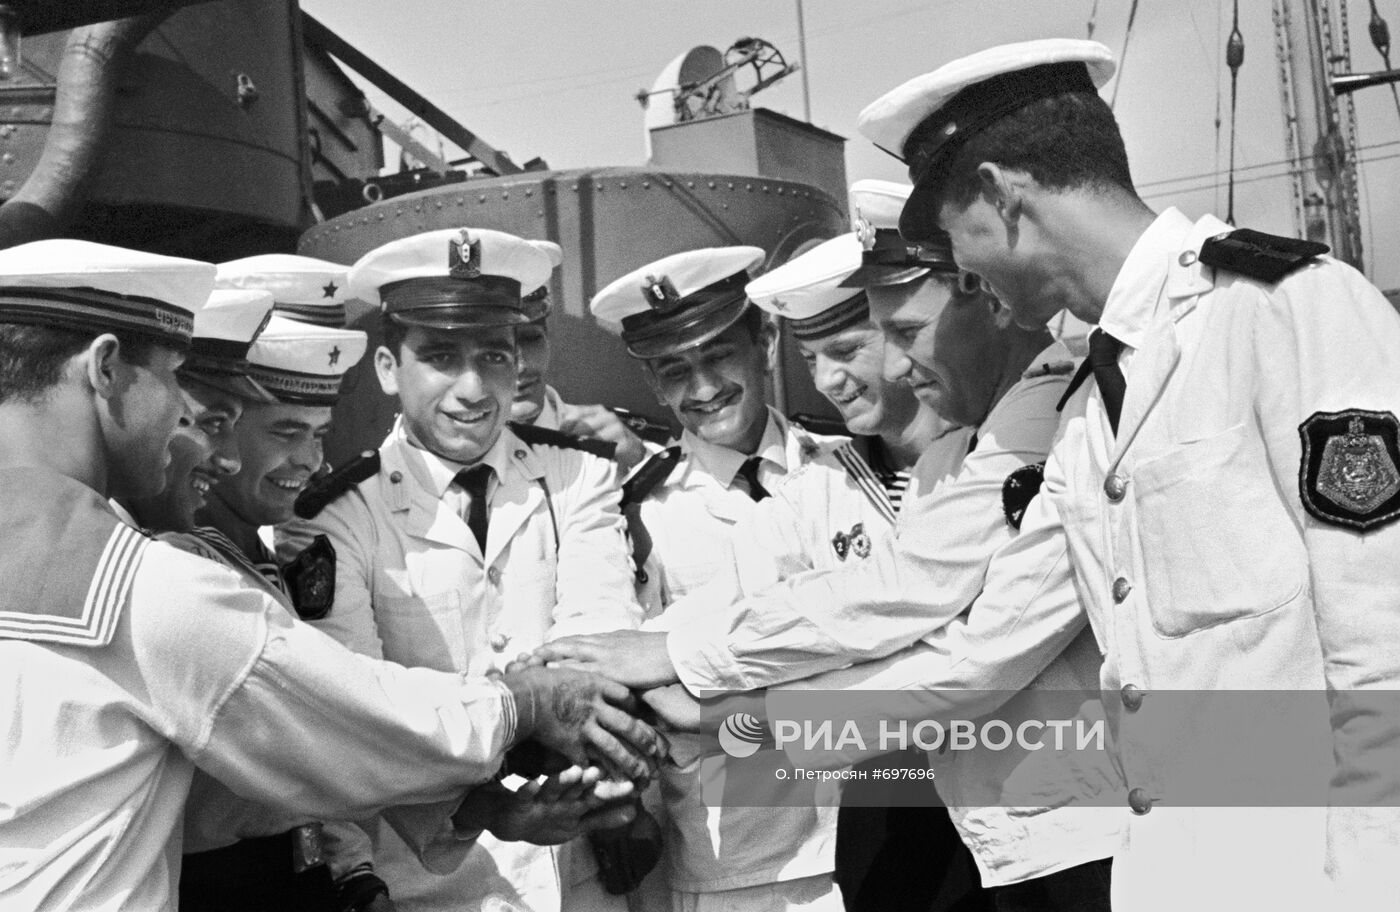 Дружественный визит военных кораблей ОАР в Севастополь